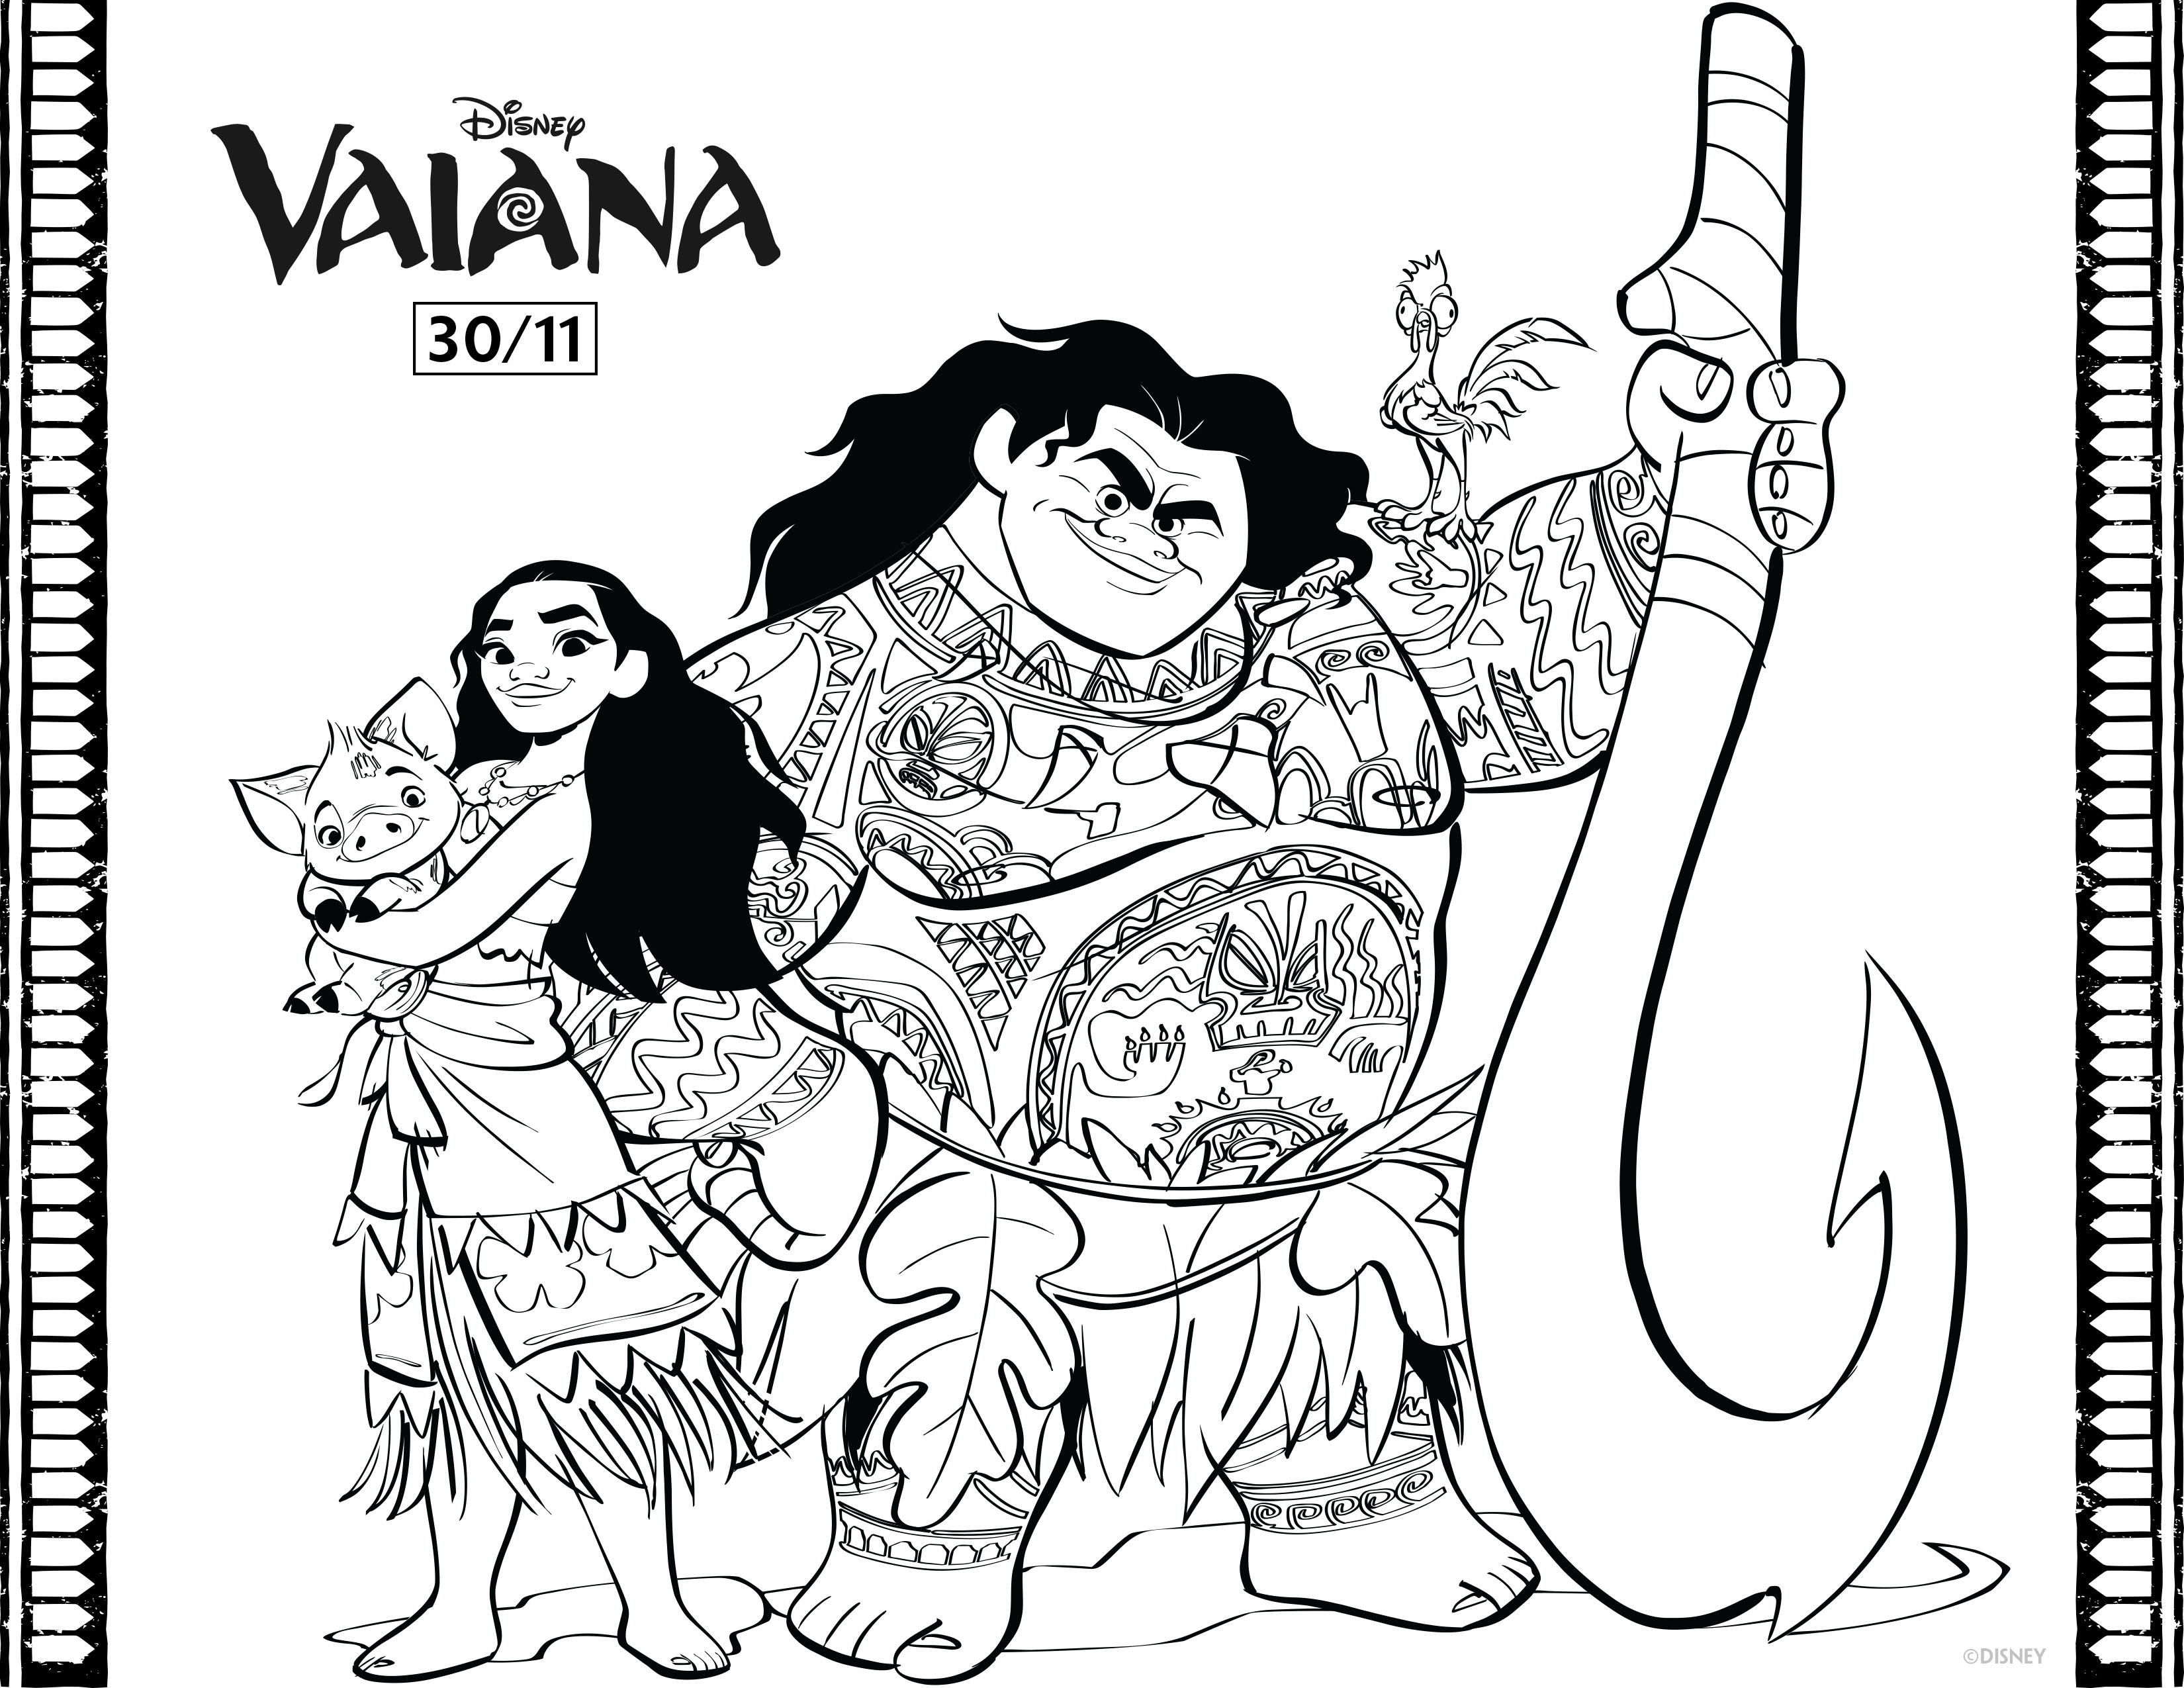 Moana y Maui, los nuevos héroes de Disney